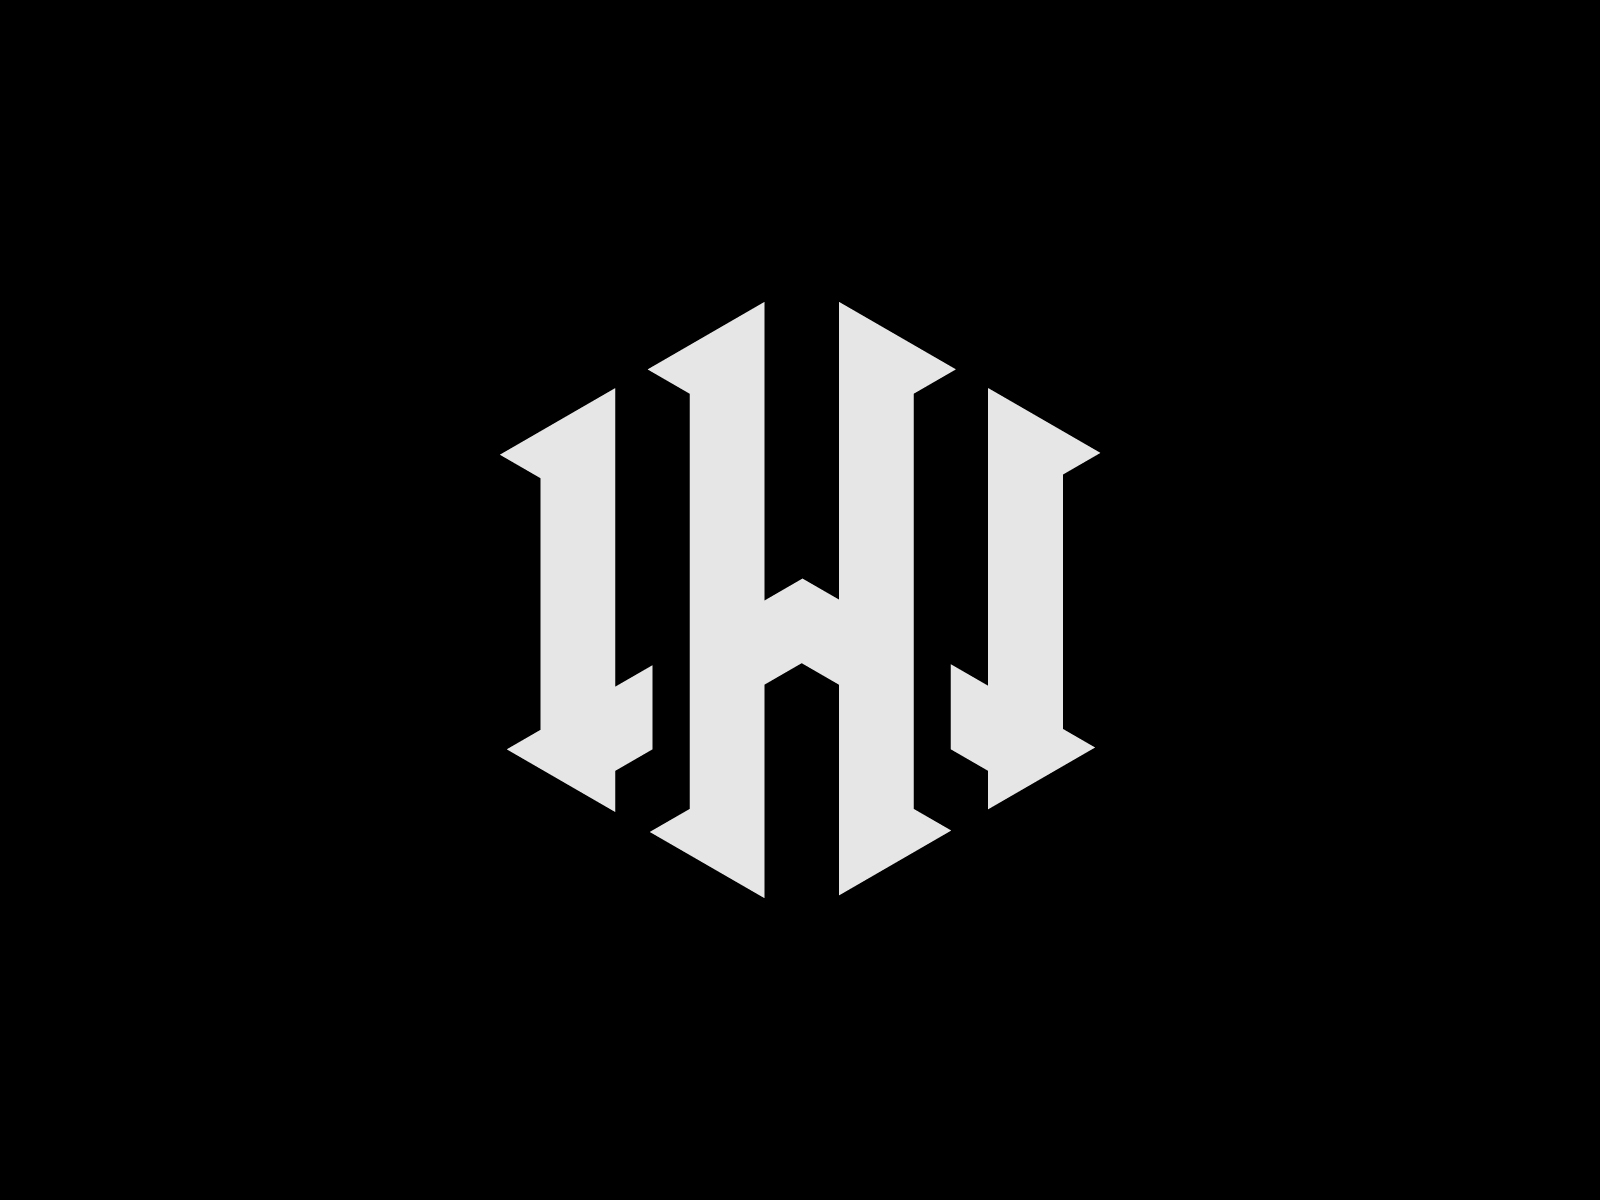 H + W by Redowan⚡️ on Dribbble